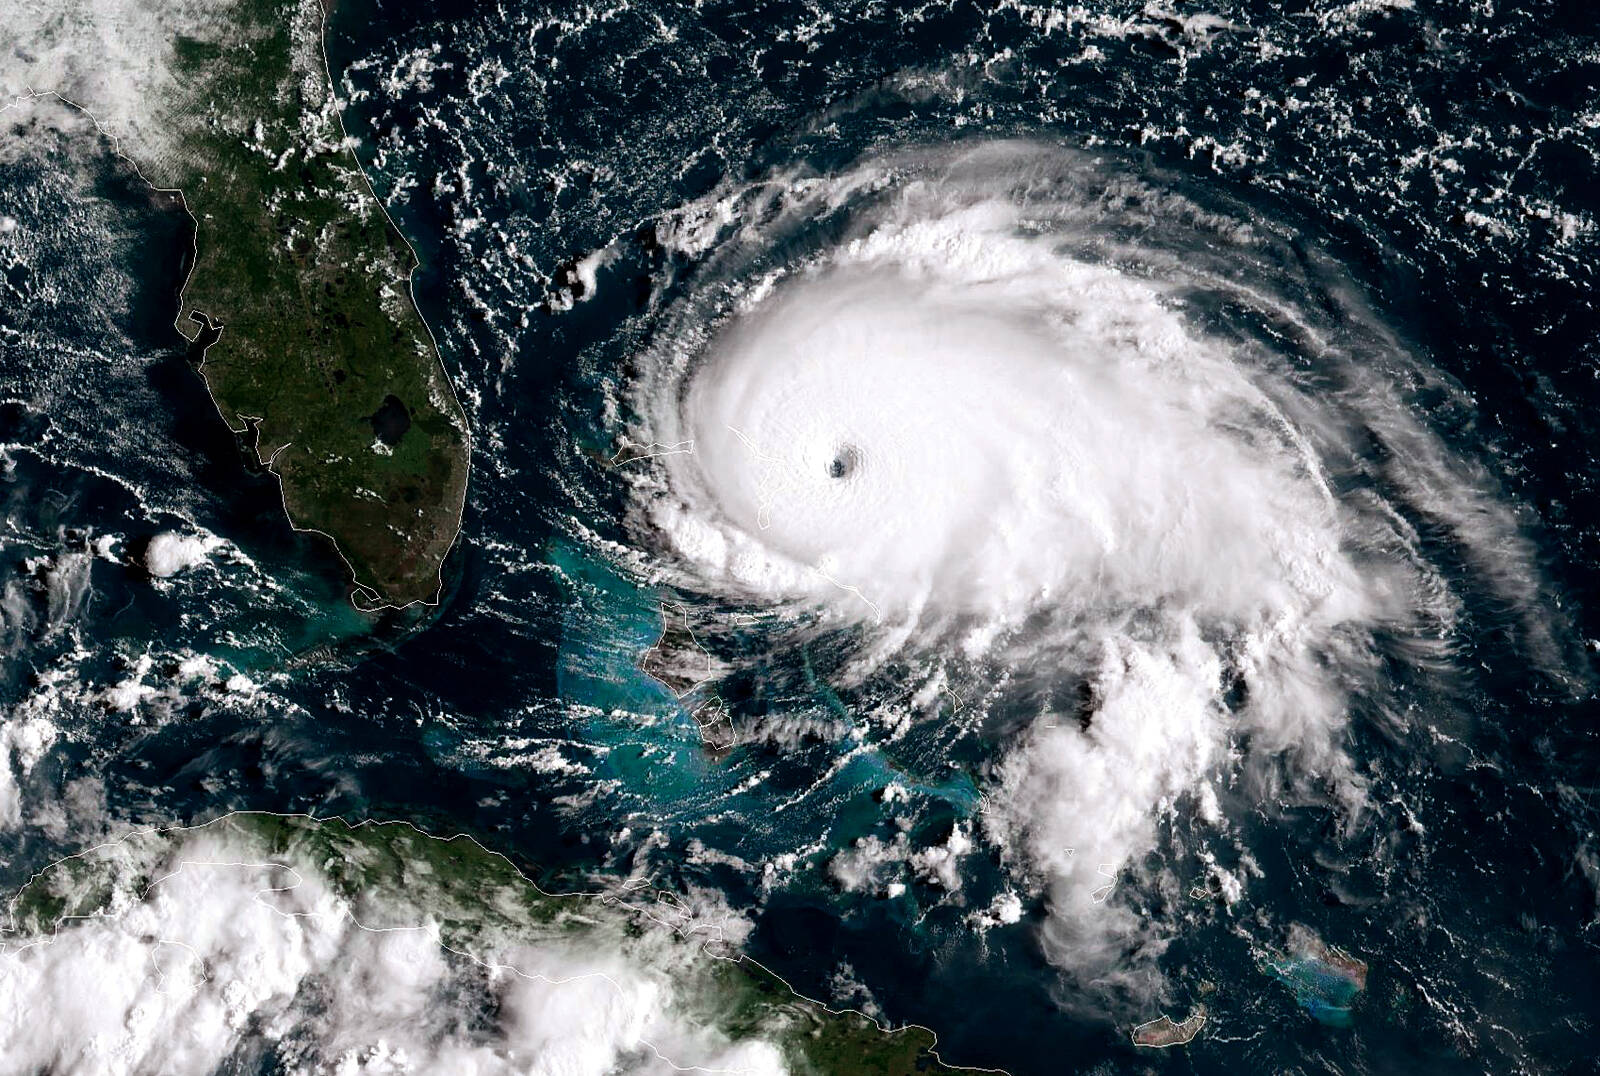 Weather Experts Predict “extra-active” 2021 Hurricane Season